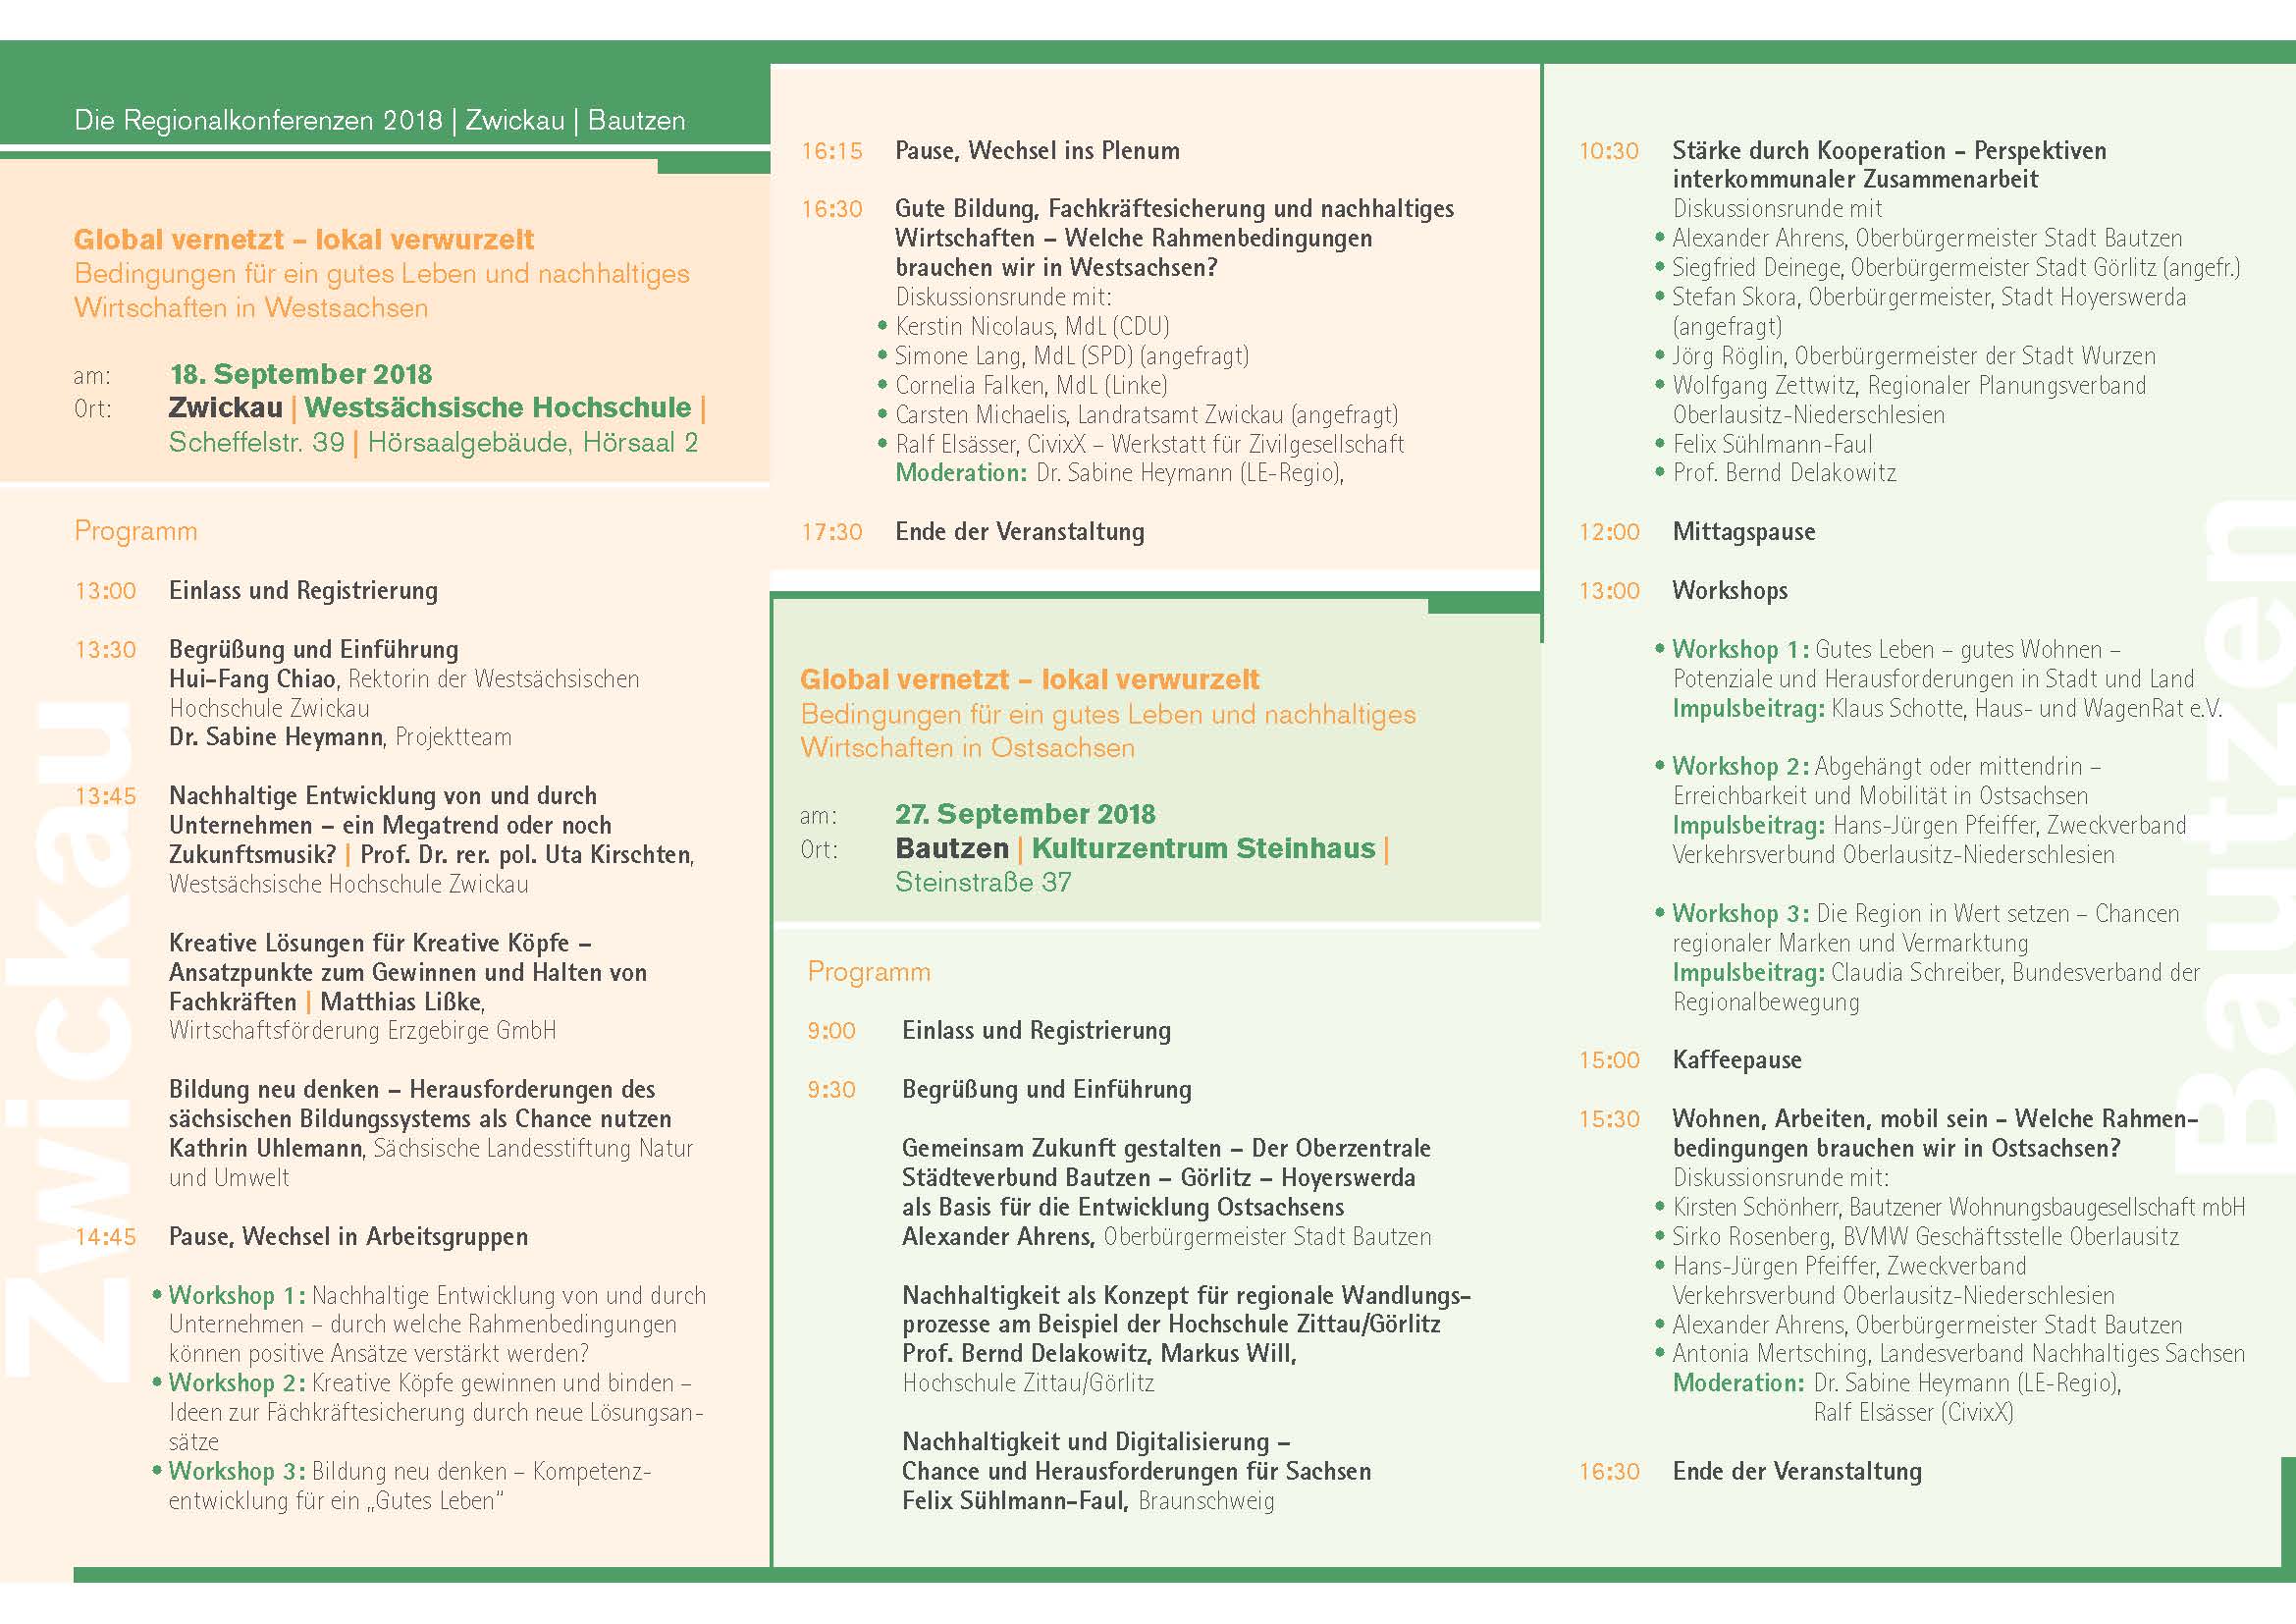 Flyer: Einladung mit Programmablauf zu Regionalkonferenz in Zwickau 2018. Them: Global vernetzt - lokal verwurzelt.